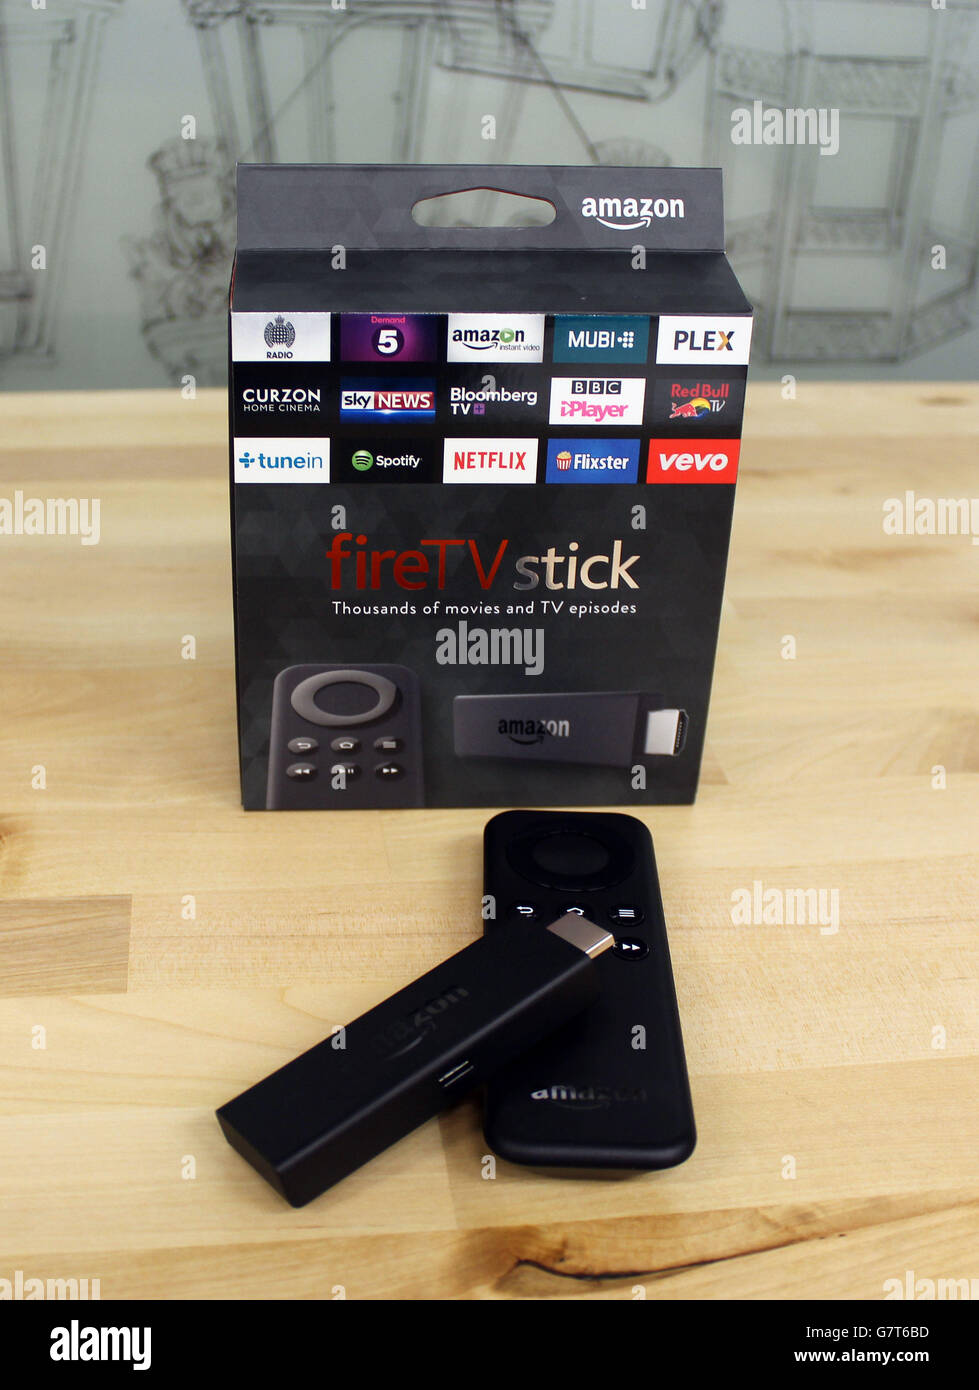 Il nuovo  Fire TV Stick, una versione portatile del suo streaming box  che è delle dimensioni di una chiavetta USB e si collega direttamente alla  porta HDMI del televisore, che è